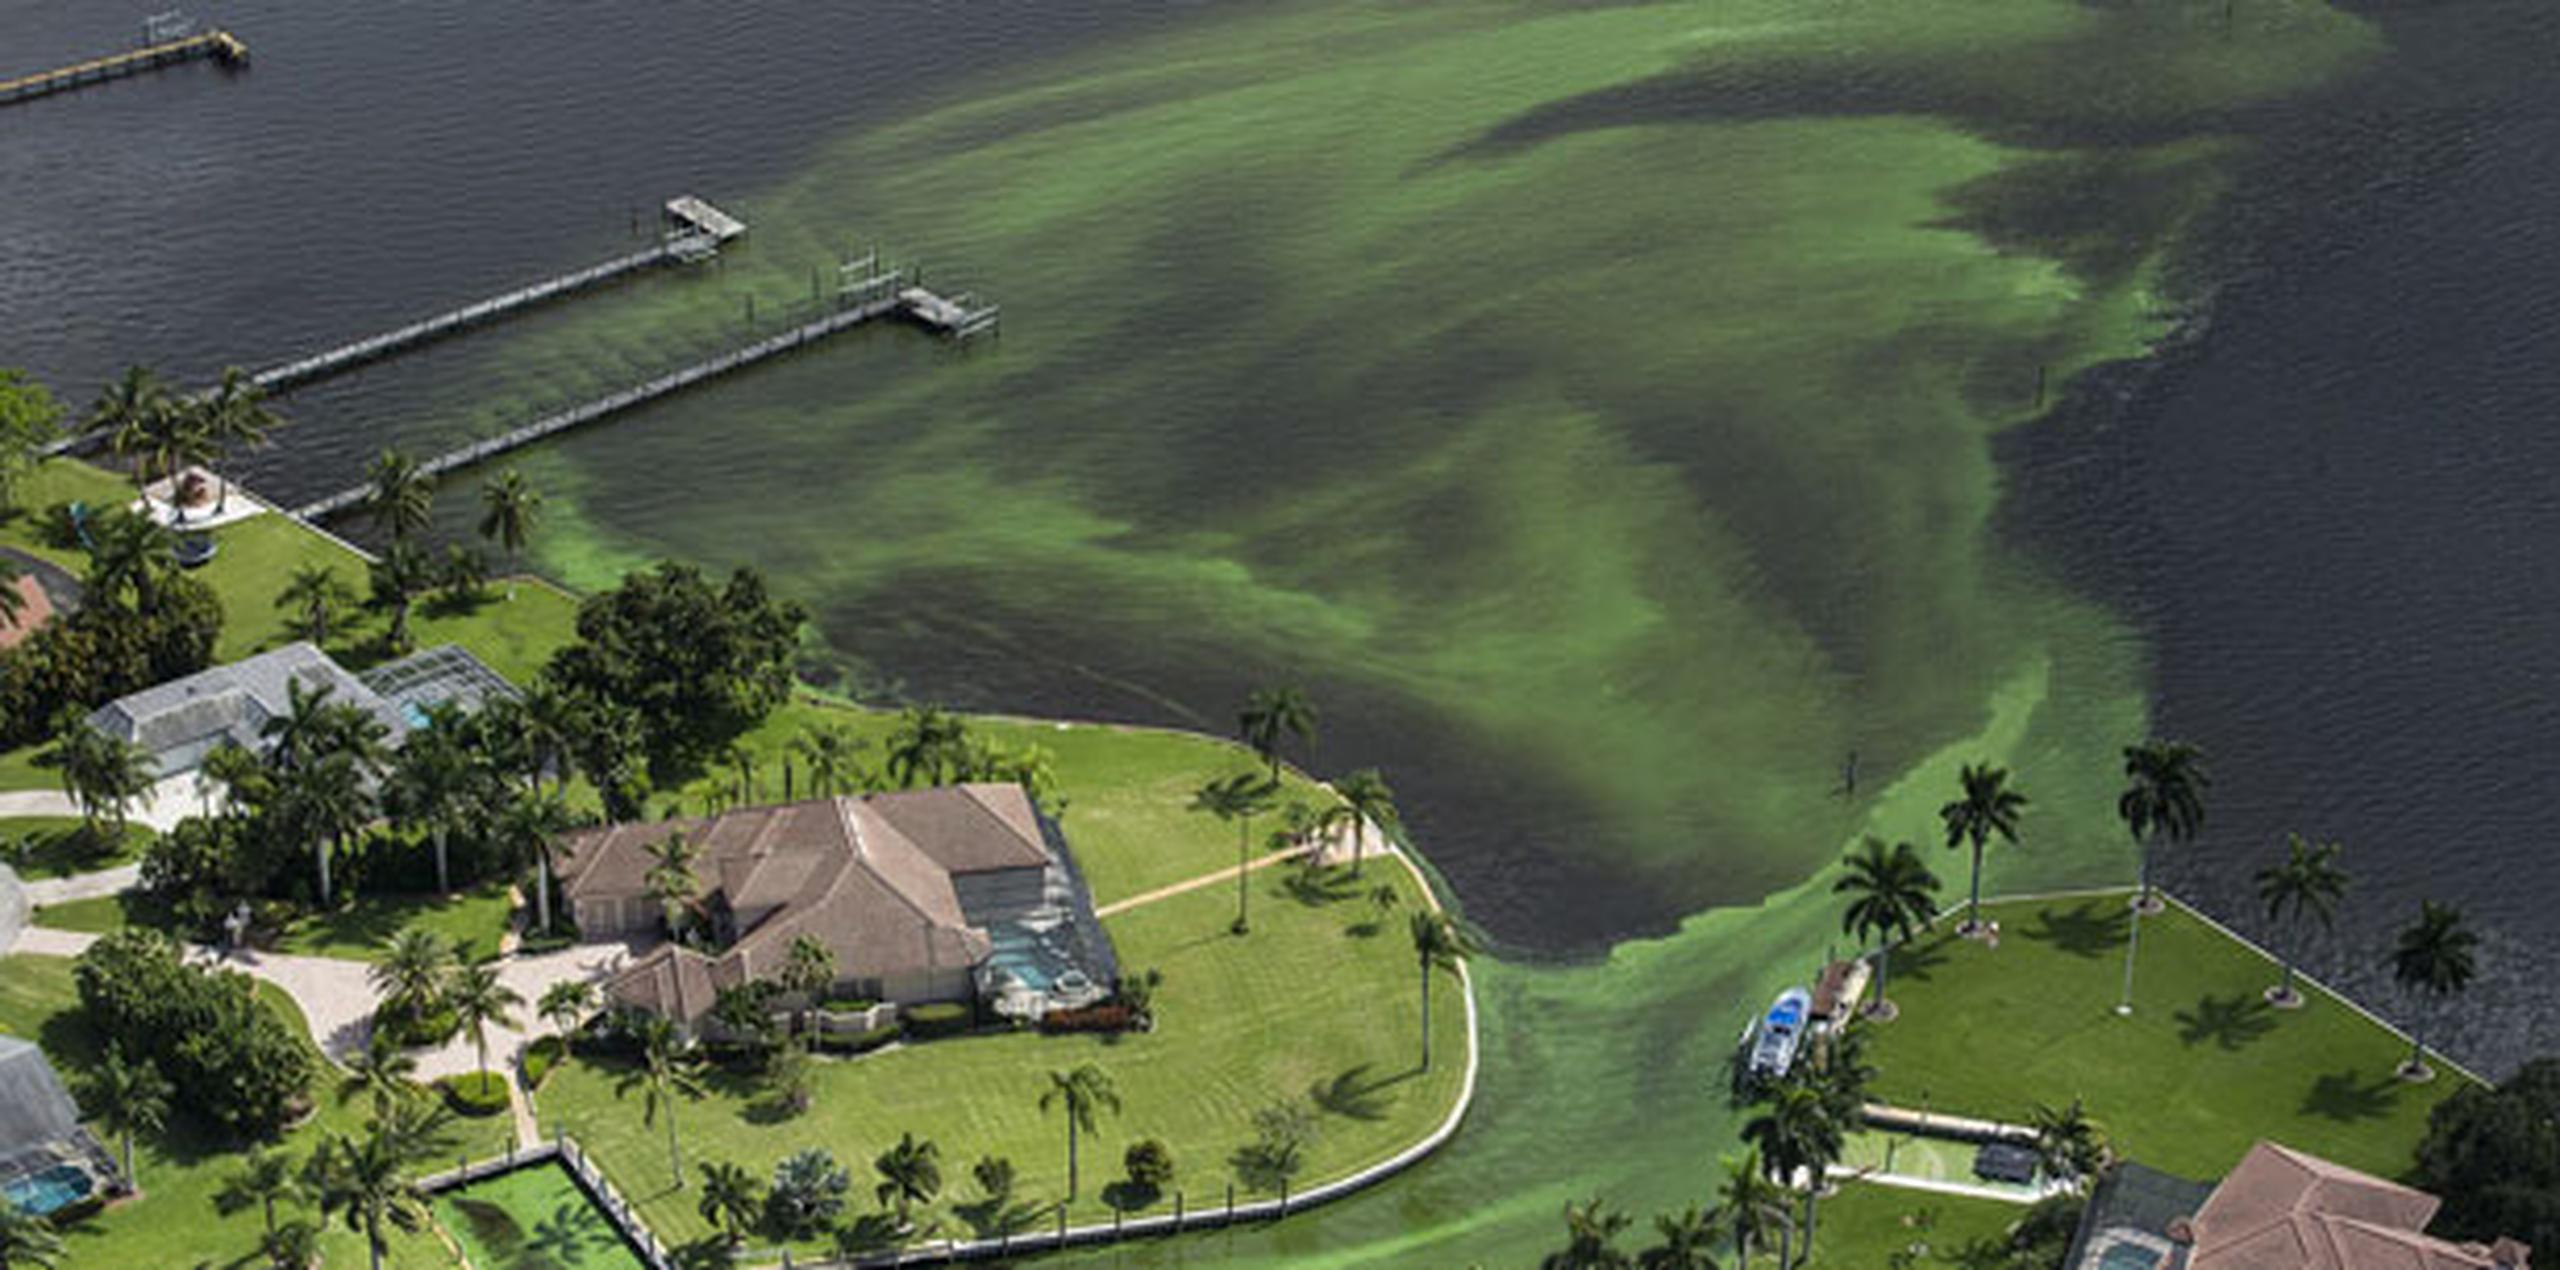 En la declaración de emergencia, Scott instruye sobre la urgencia de "acelerar los proyectos de almacenamiento de agua para reducir la proliferación de algas". (Greg Lovett/The Palm Beach Post via AP)
